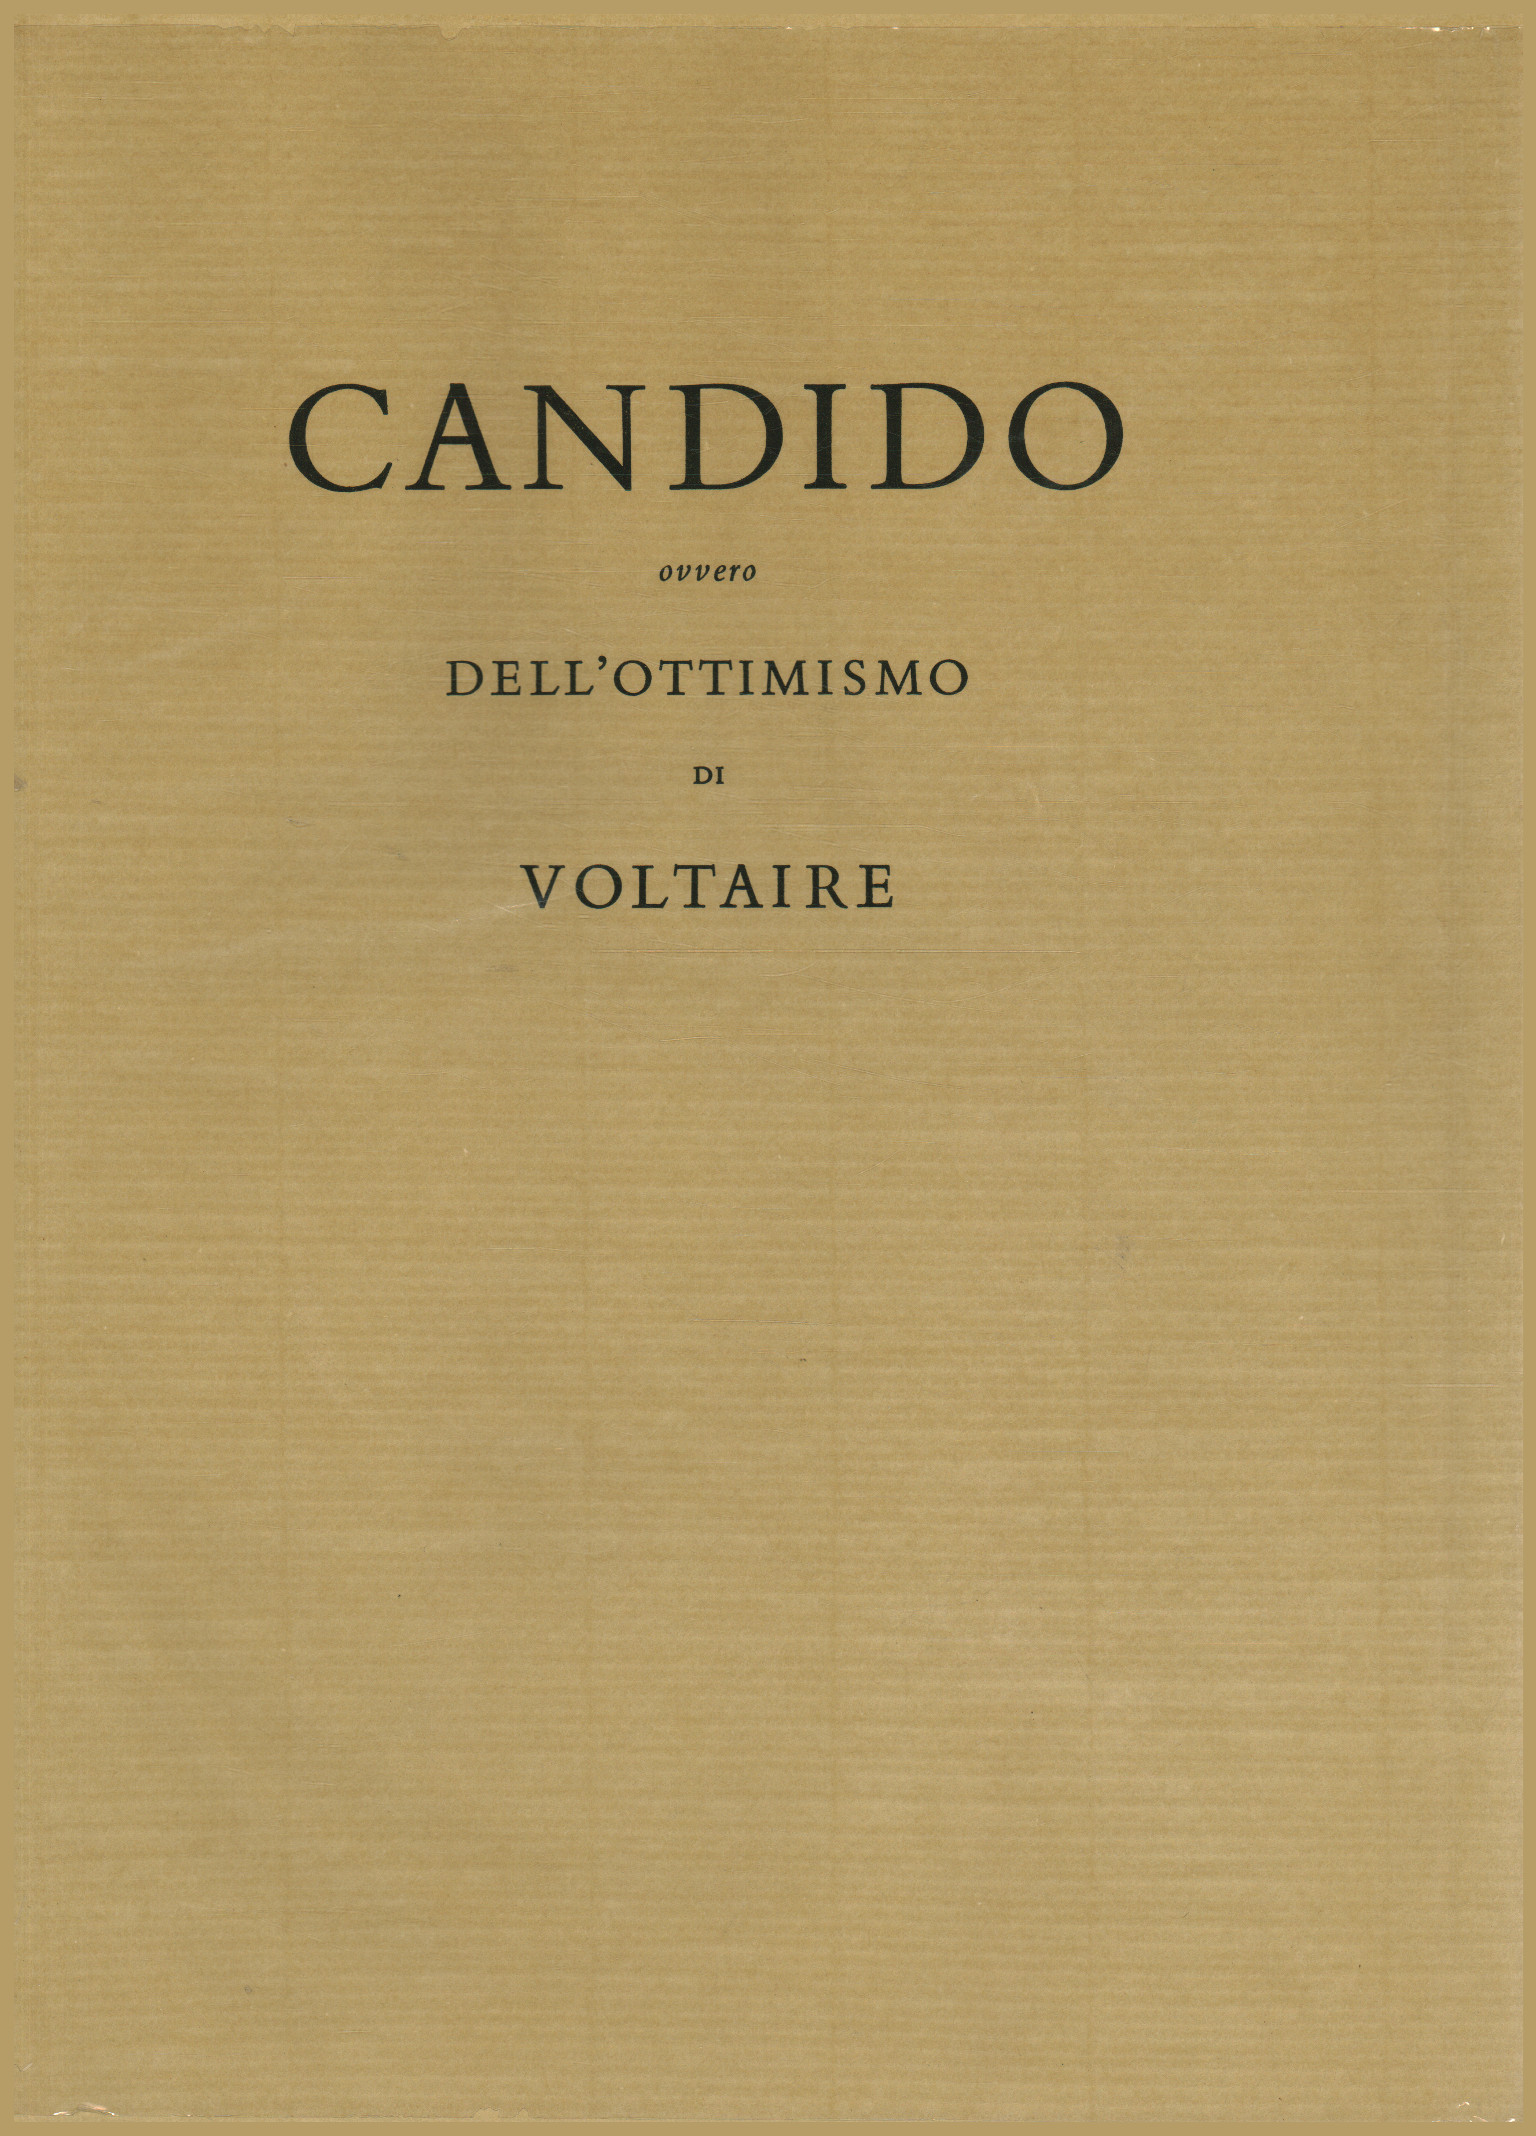 Candido ovvero dell ottimismo di Voltaire, AA.VV